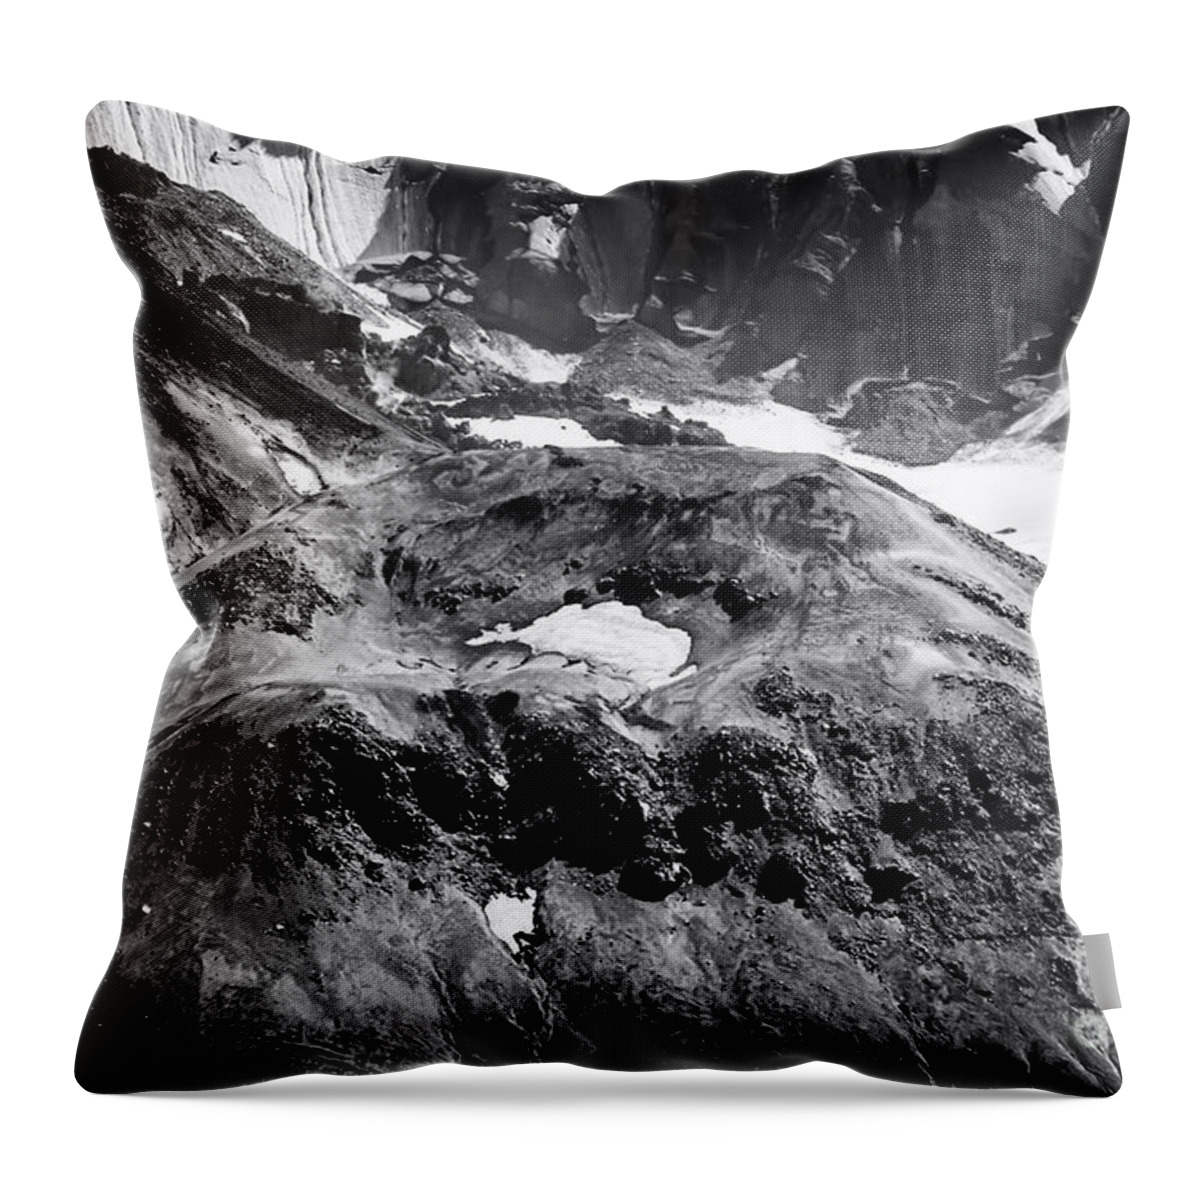 Mt St Helens Art Throw Pillow featuring the photograph Mt St. Helen's Crater by David Millenheft